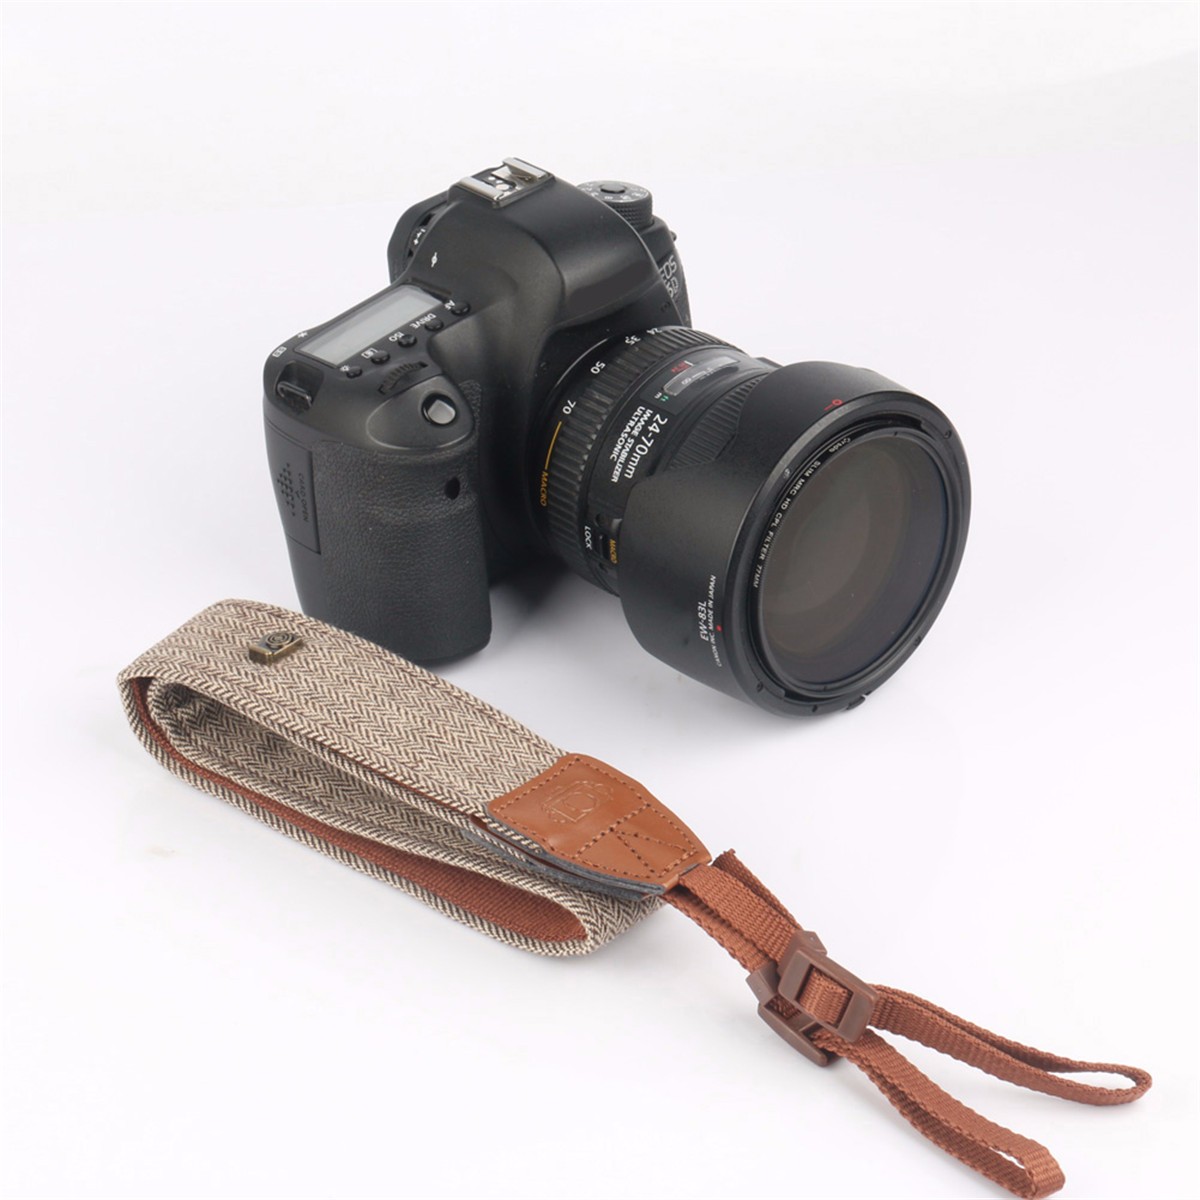 Adjustable-Vintage-Retro-Style-Shoulder-Neck-Strap-Belt-Sling-for-SLR-DSLR-Digital-Cameras-for-Canon-1272821